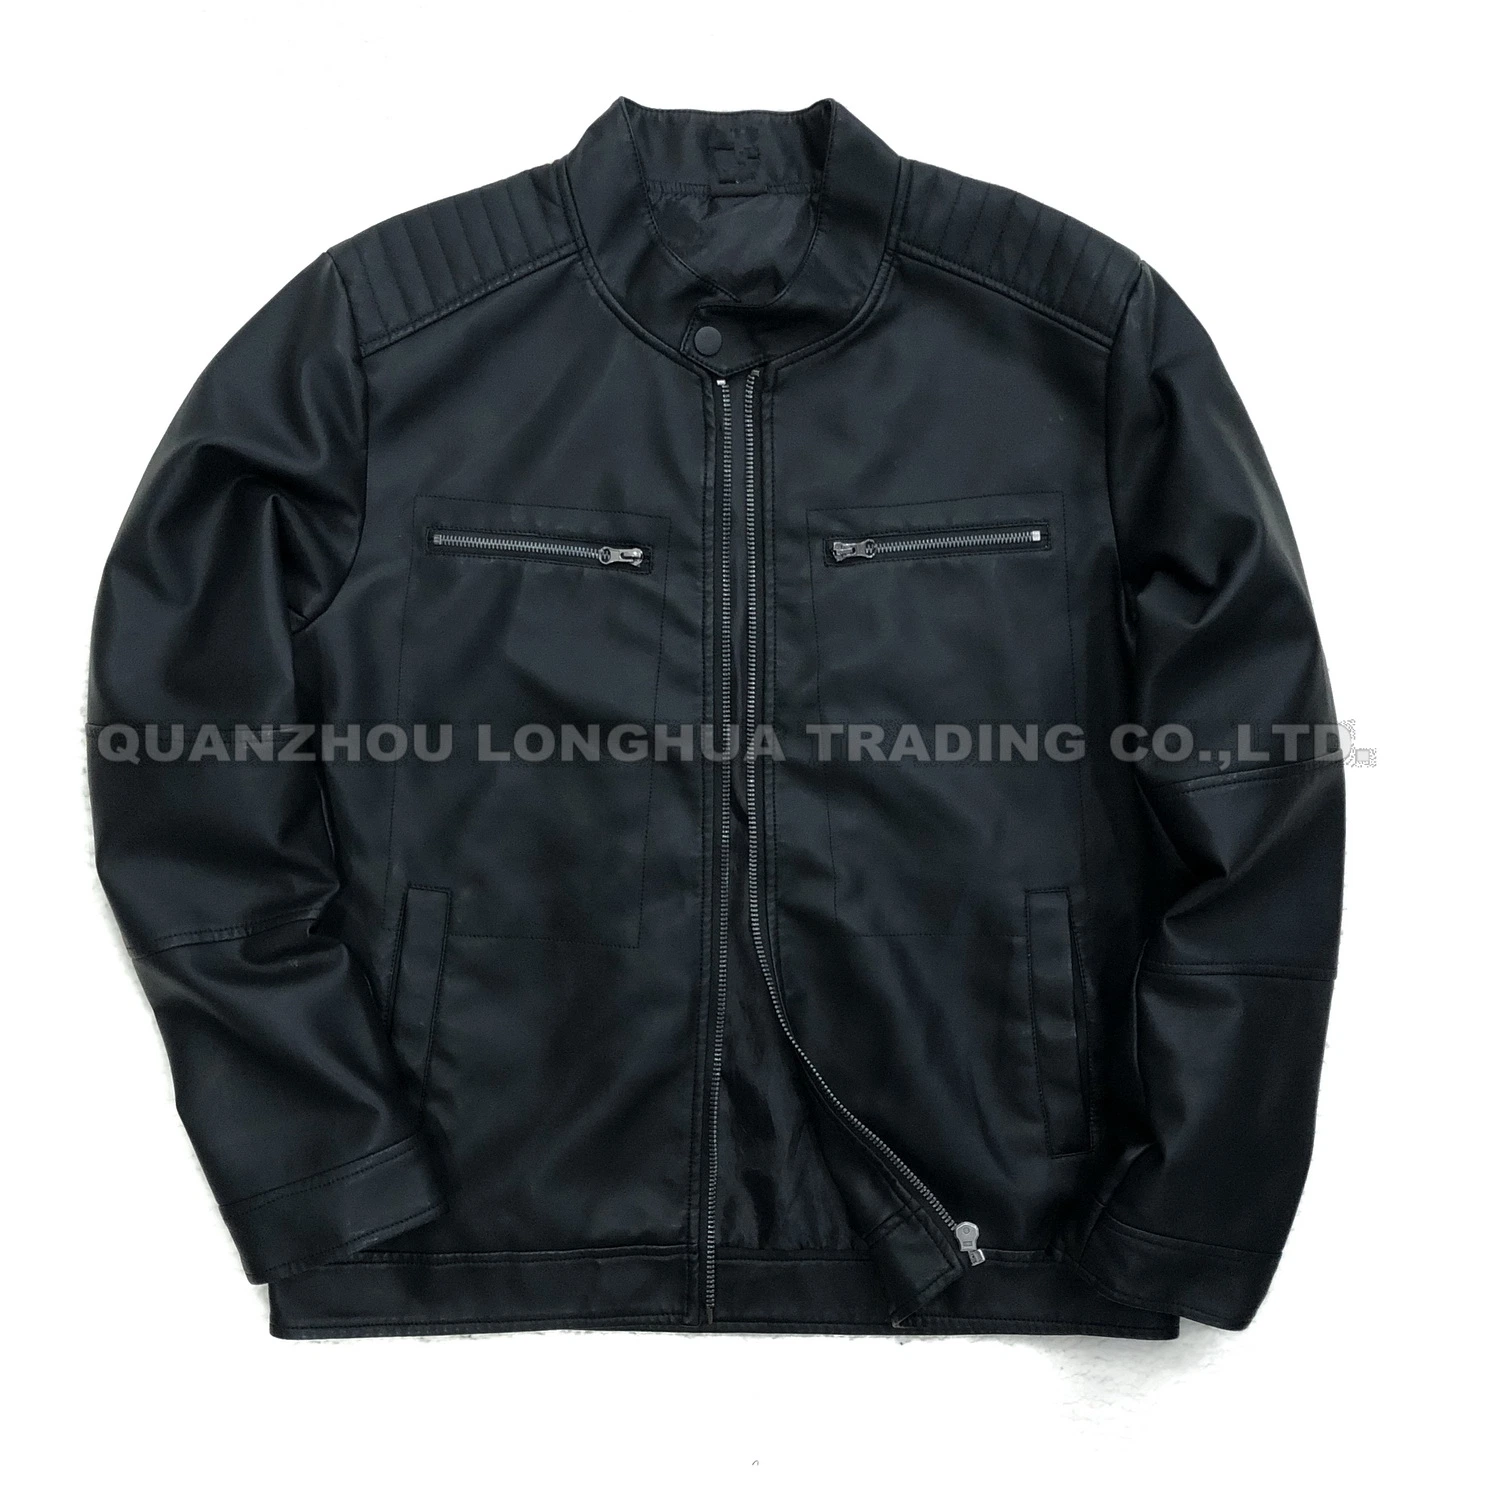 Herren Jacke Boy Jacke New Washed Leather Bekleidung Schwarz PU Kleidung Mode Kleidung Outdoor Mantel